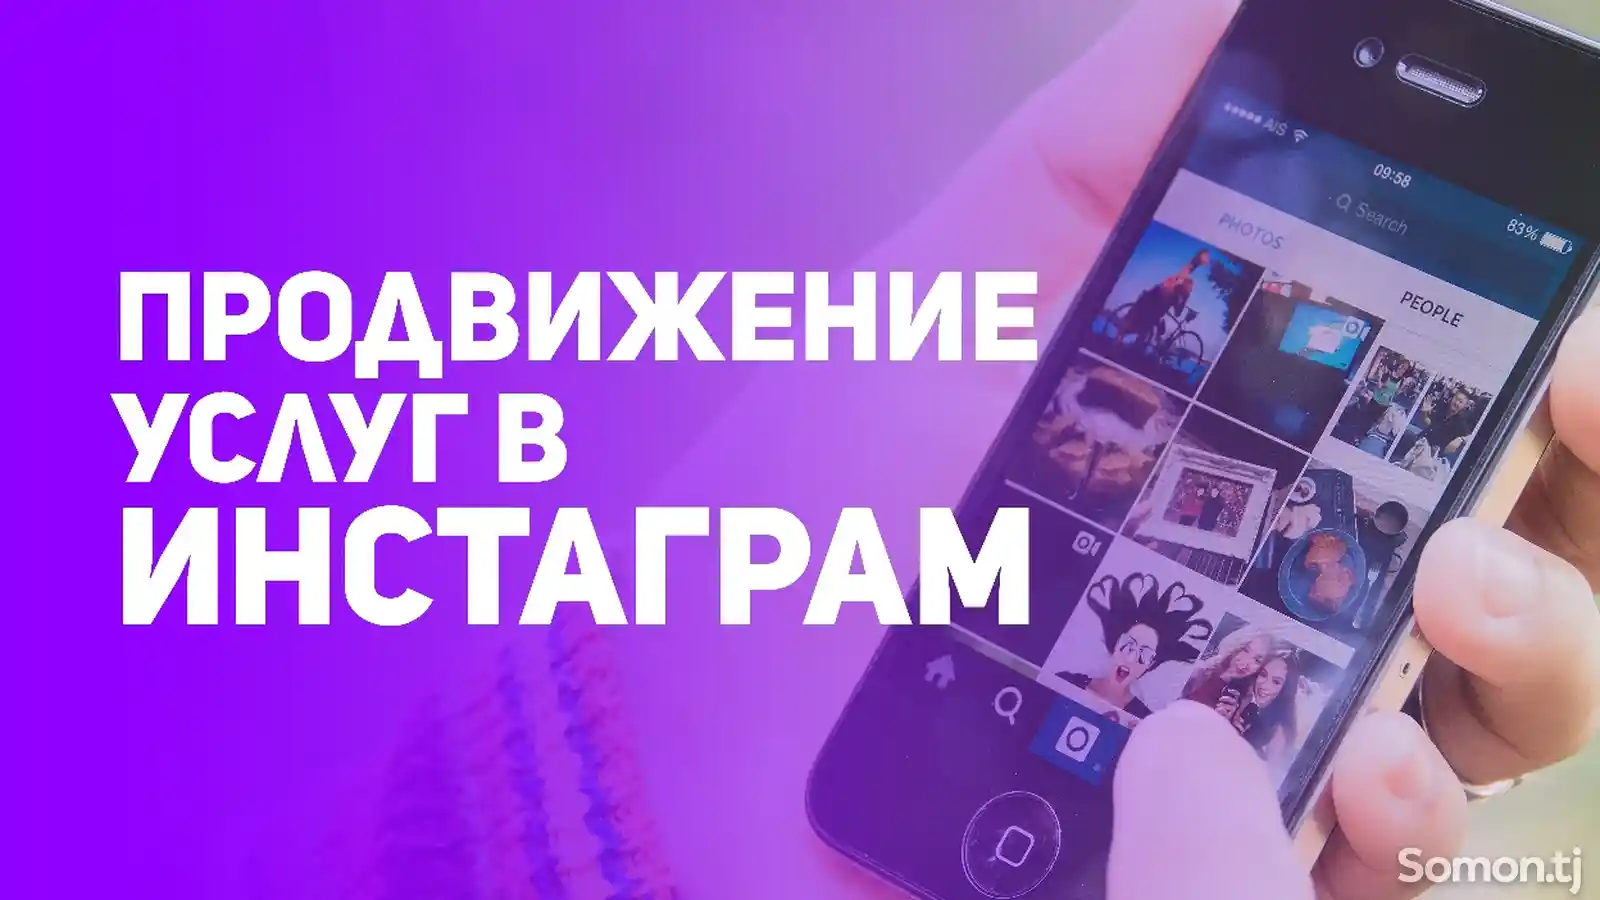 Запуск рекламного продвижения Instagram-4